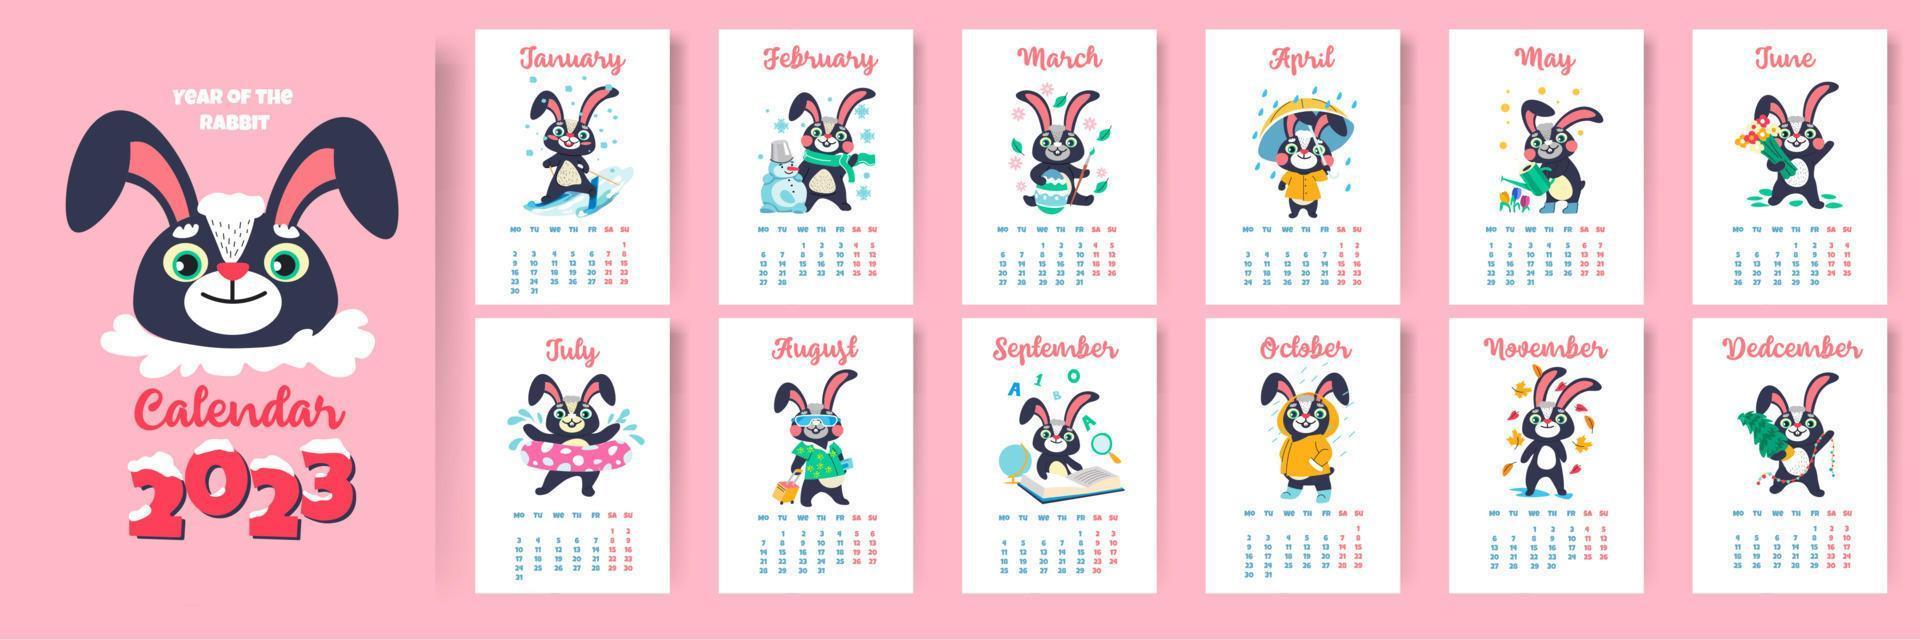 kalender voor 2023, jaar van konijn, maanden en dagen vector